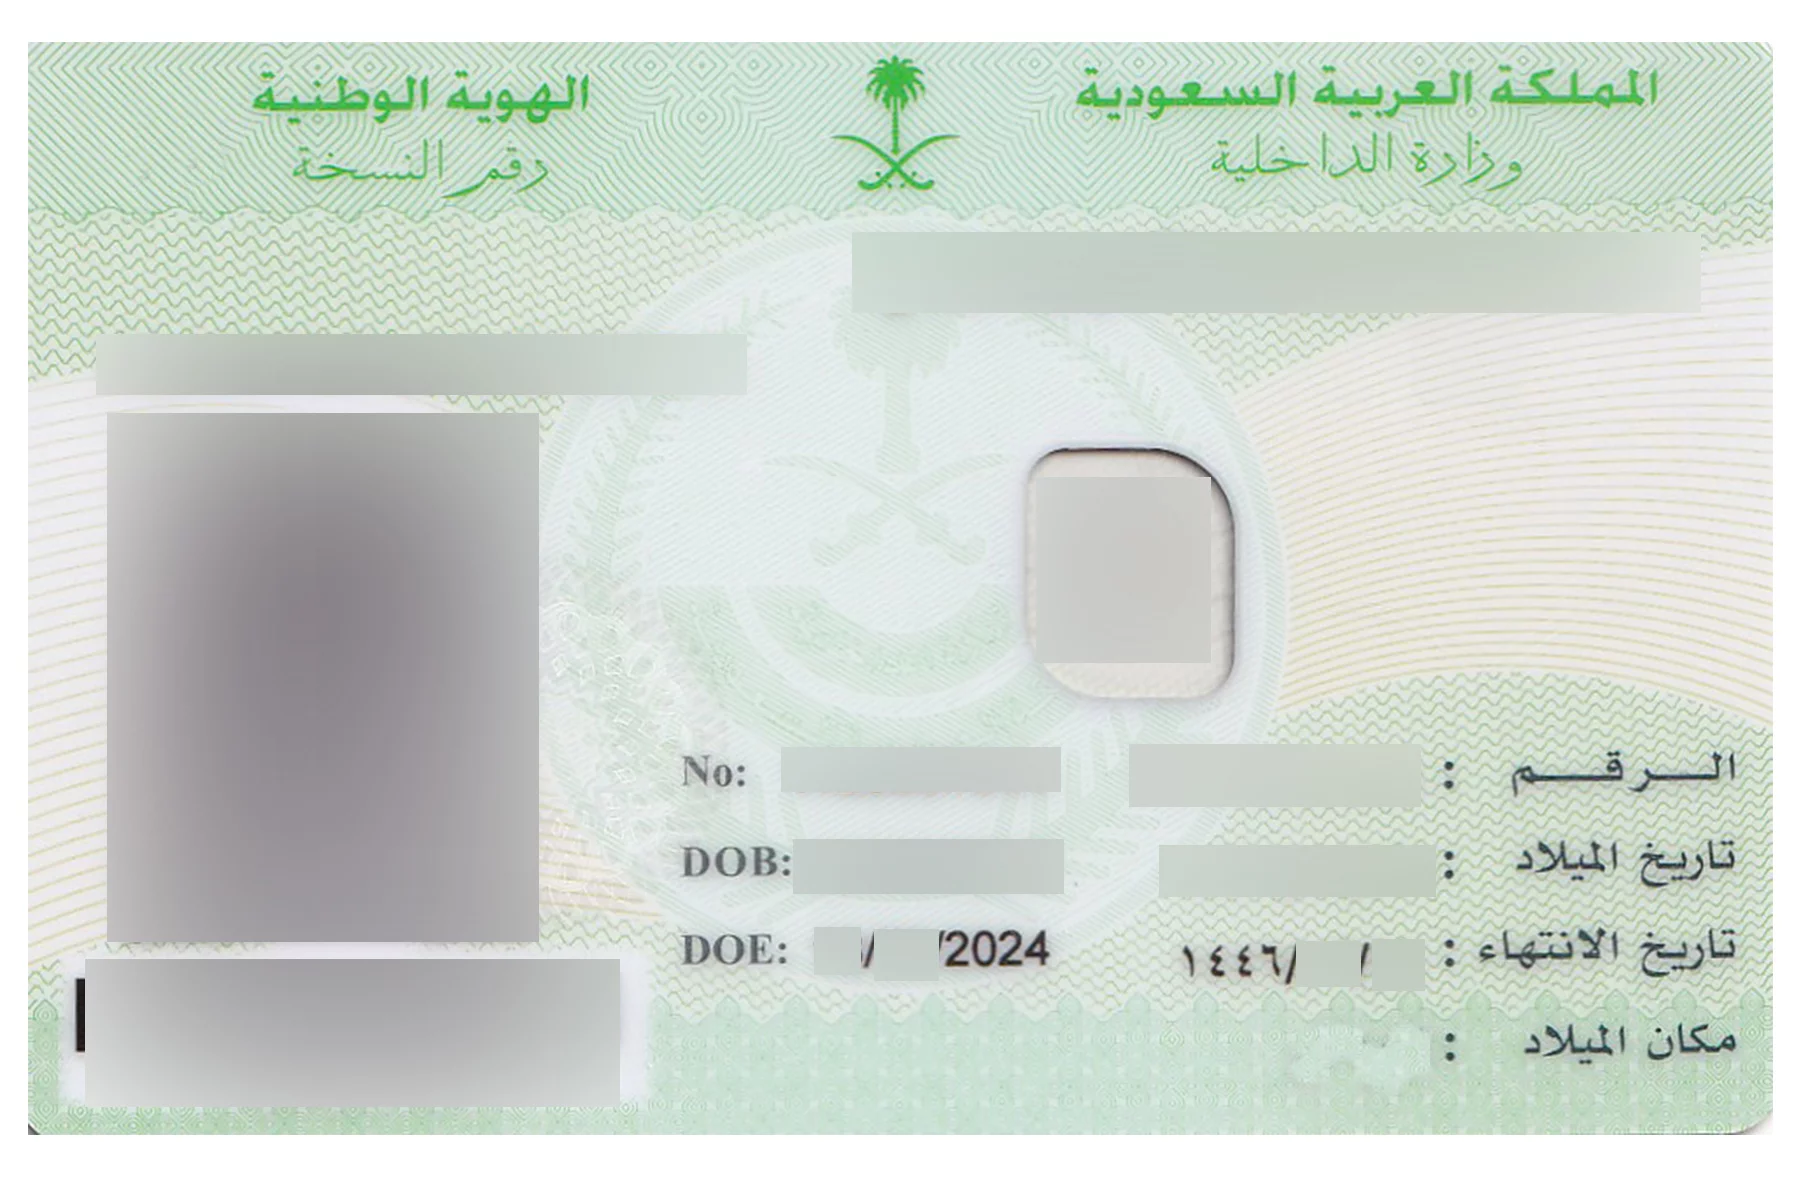 Saudi ID example